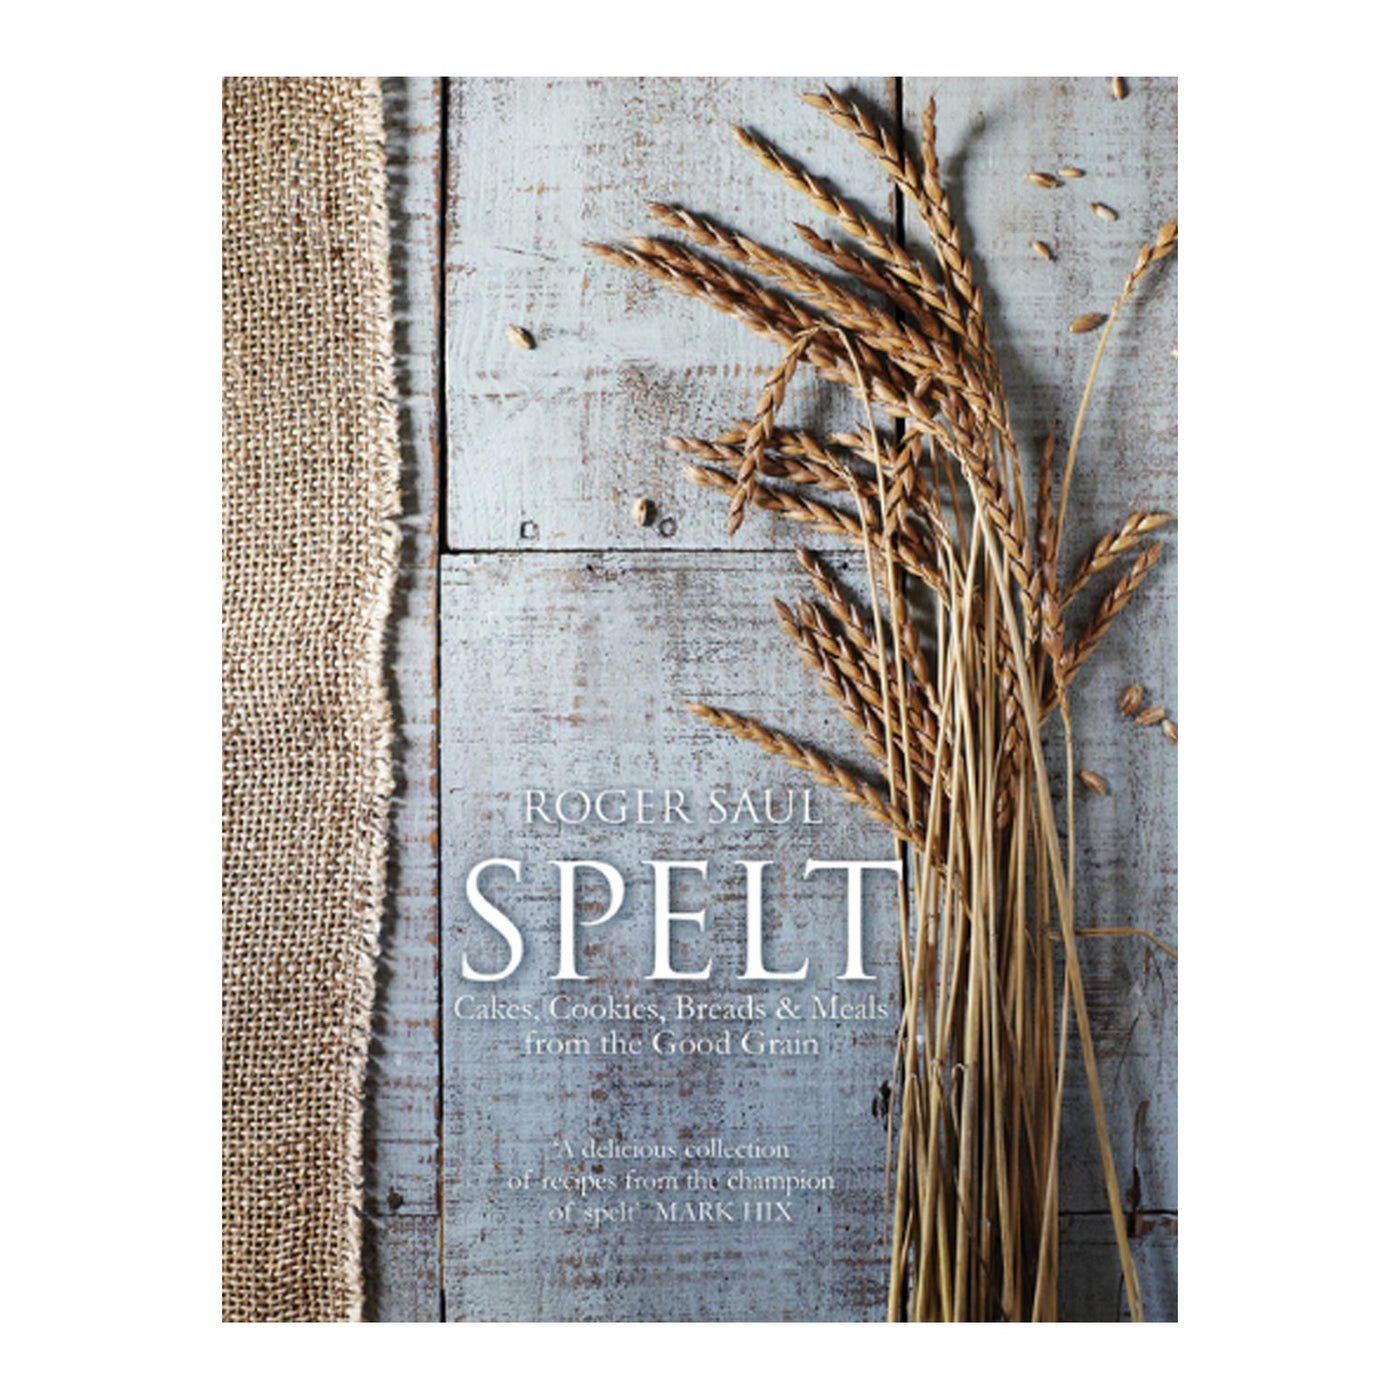 Cookbook titled Spelt